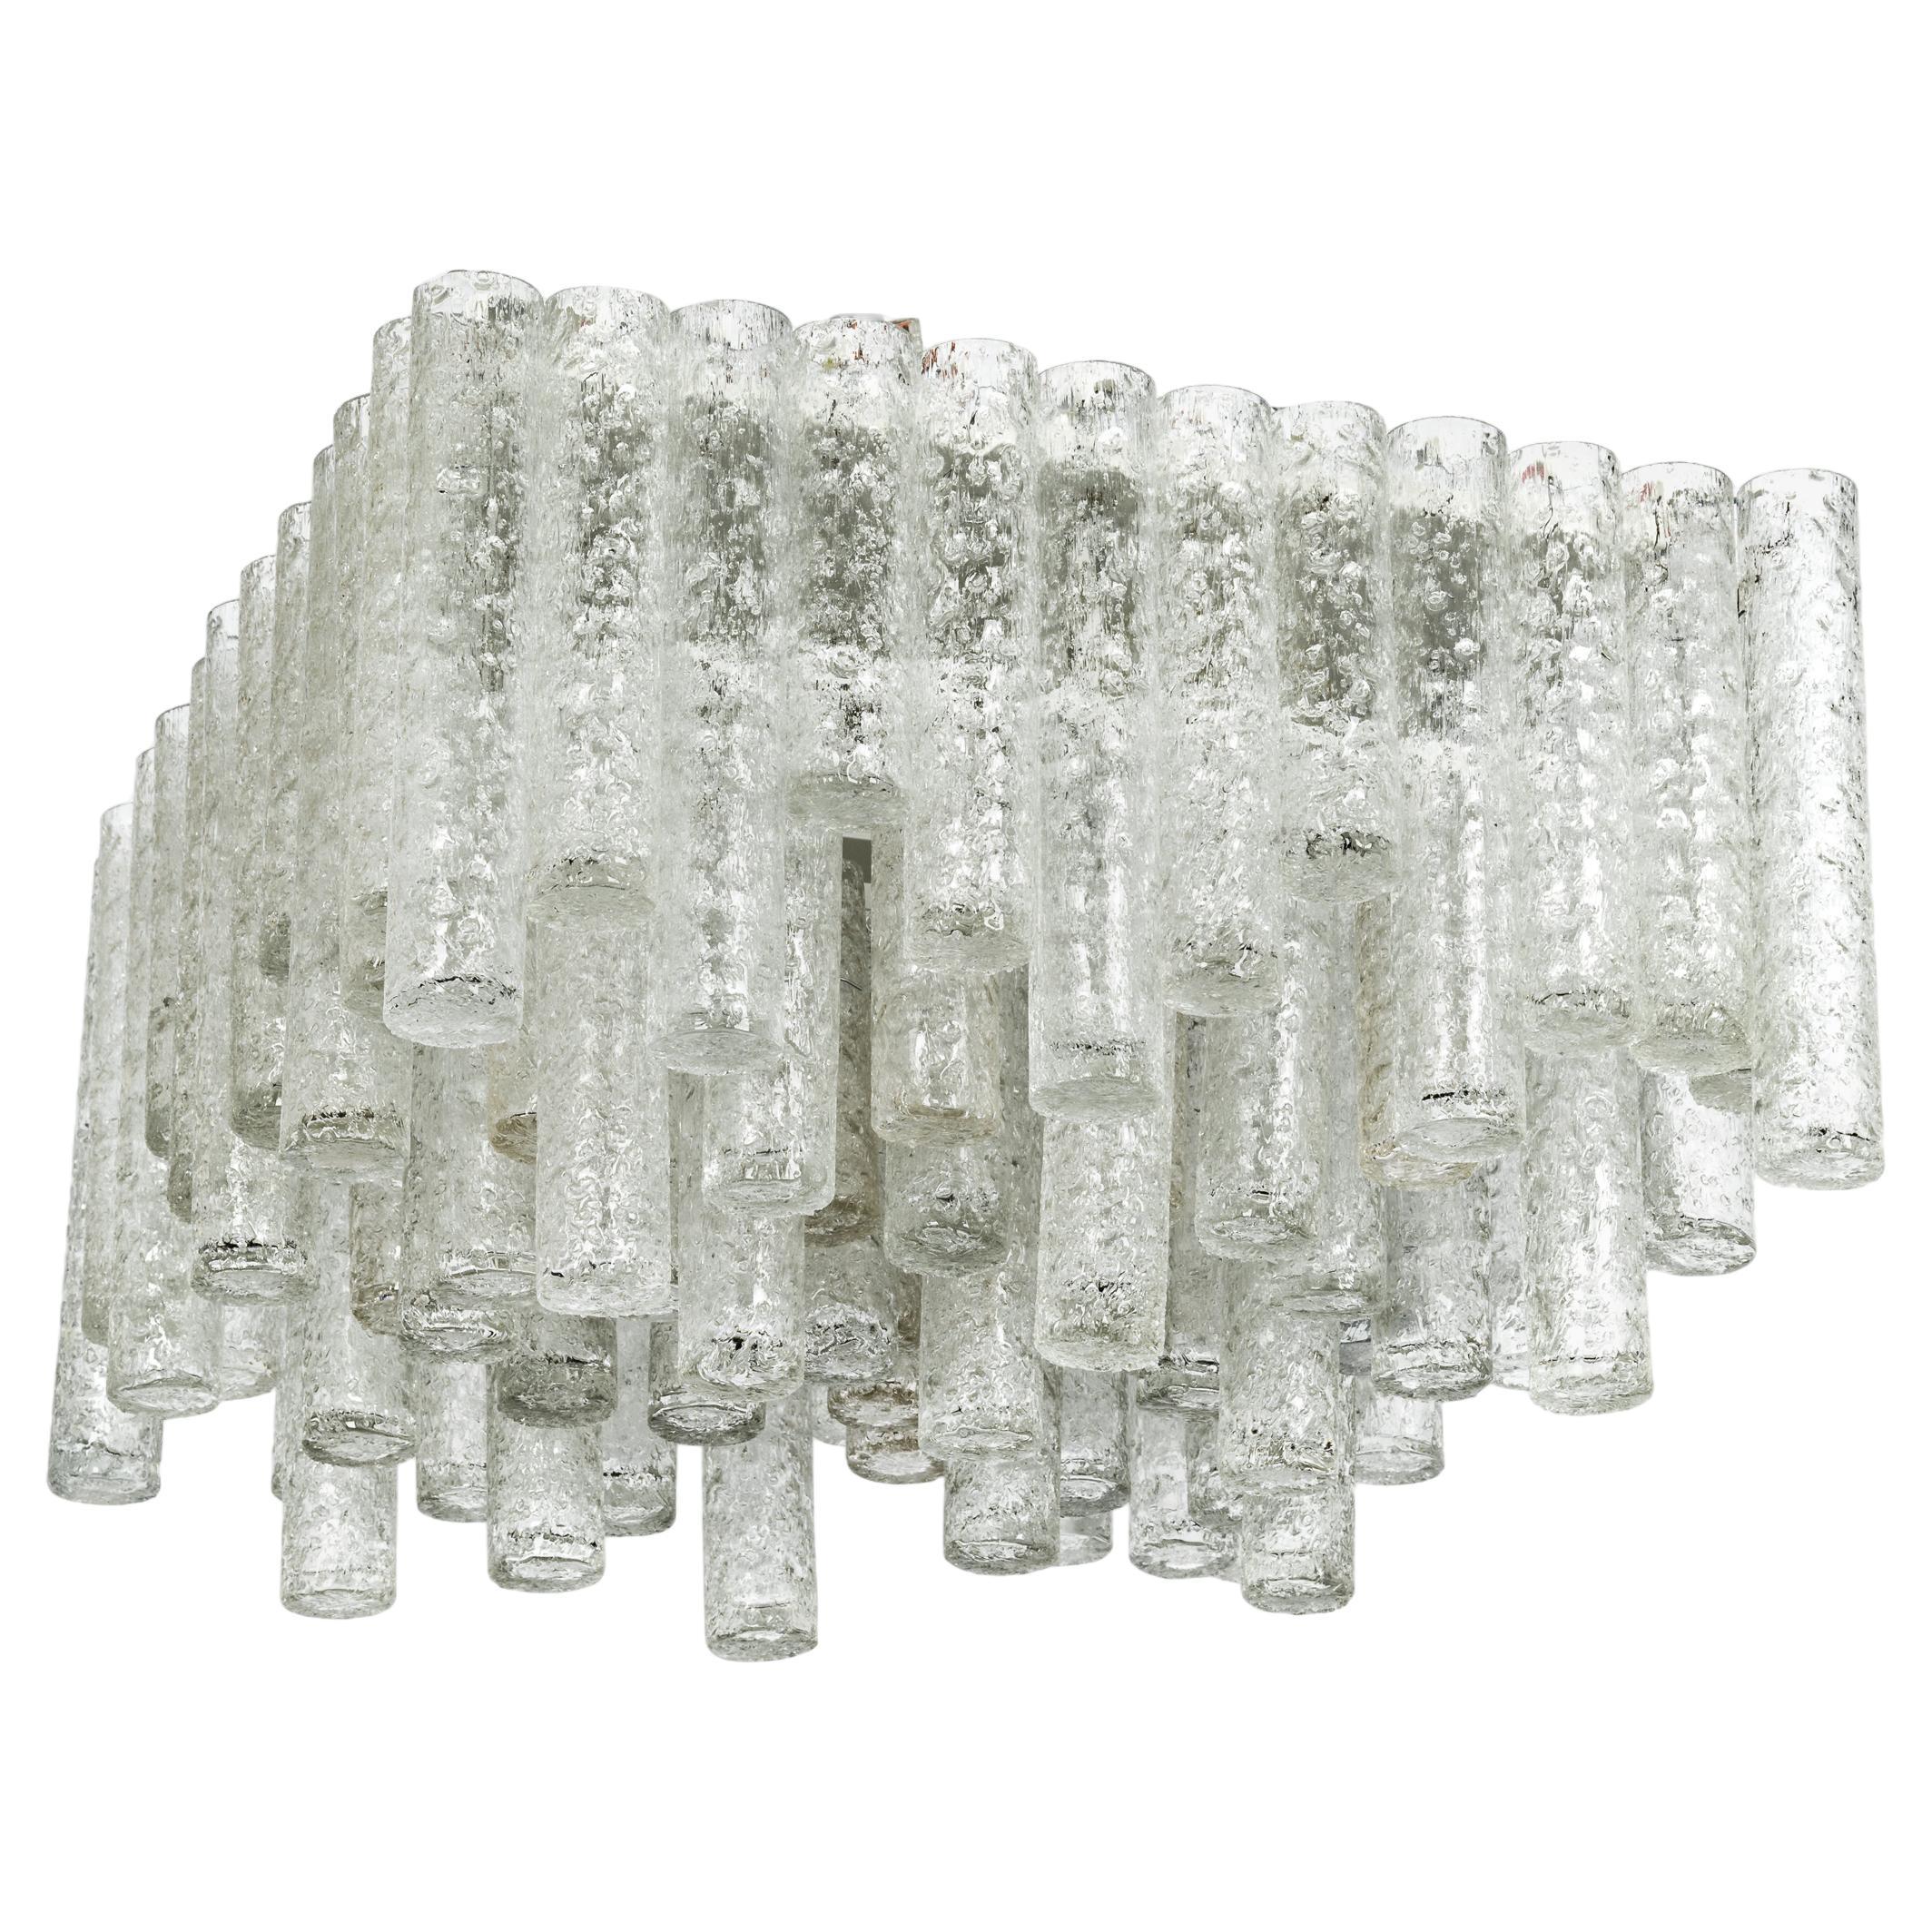 Fantastischer großer Kronleuchter aus der Mitte des Jahrhunderts von Doria, Deutschland, hergestellt ca. 1960-1969. Viele Murano-Glaszylinder sind an der Leuchte aufgehängt.
Wunderschönes geometrisches Design.
Hochwertig und in sehr gutem Zustand.